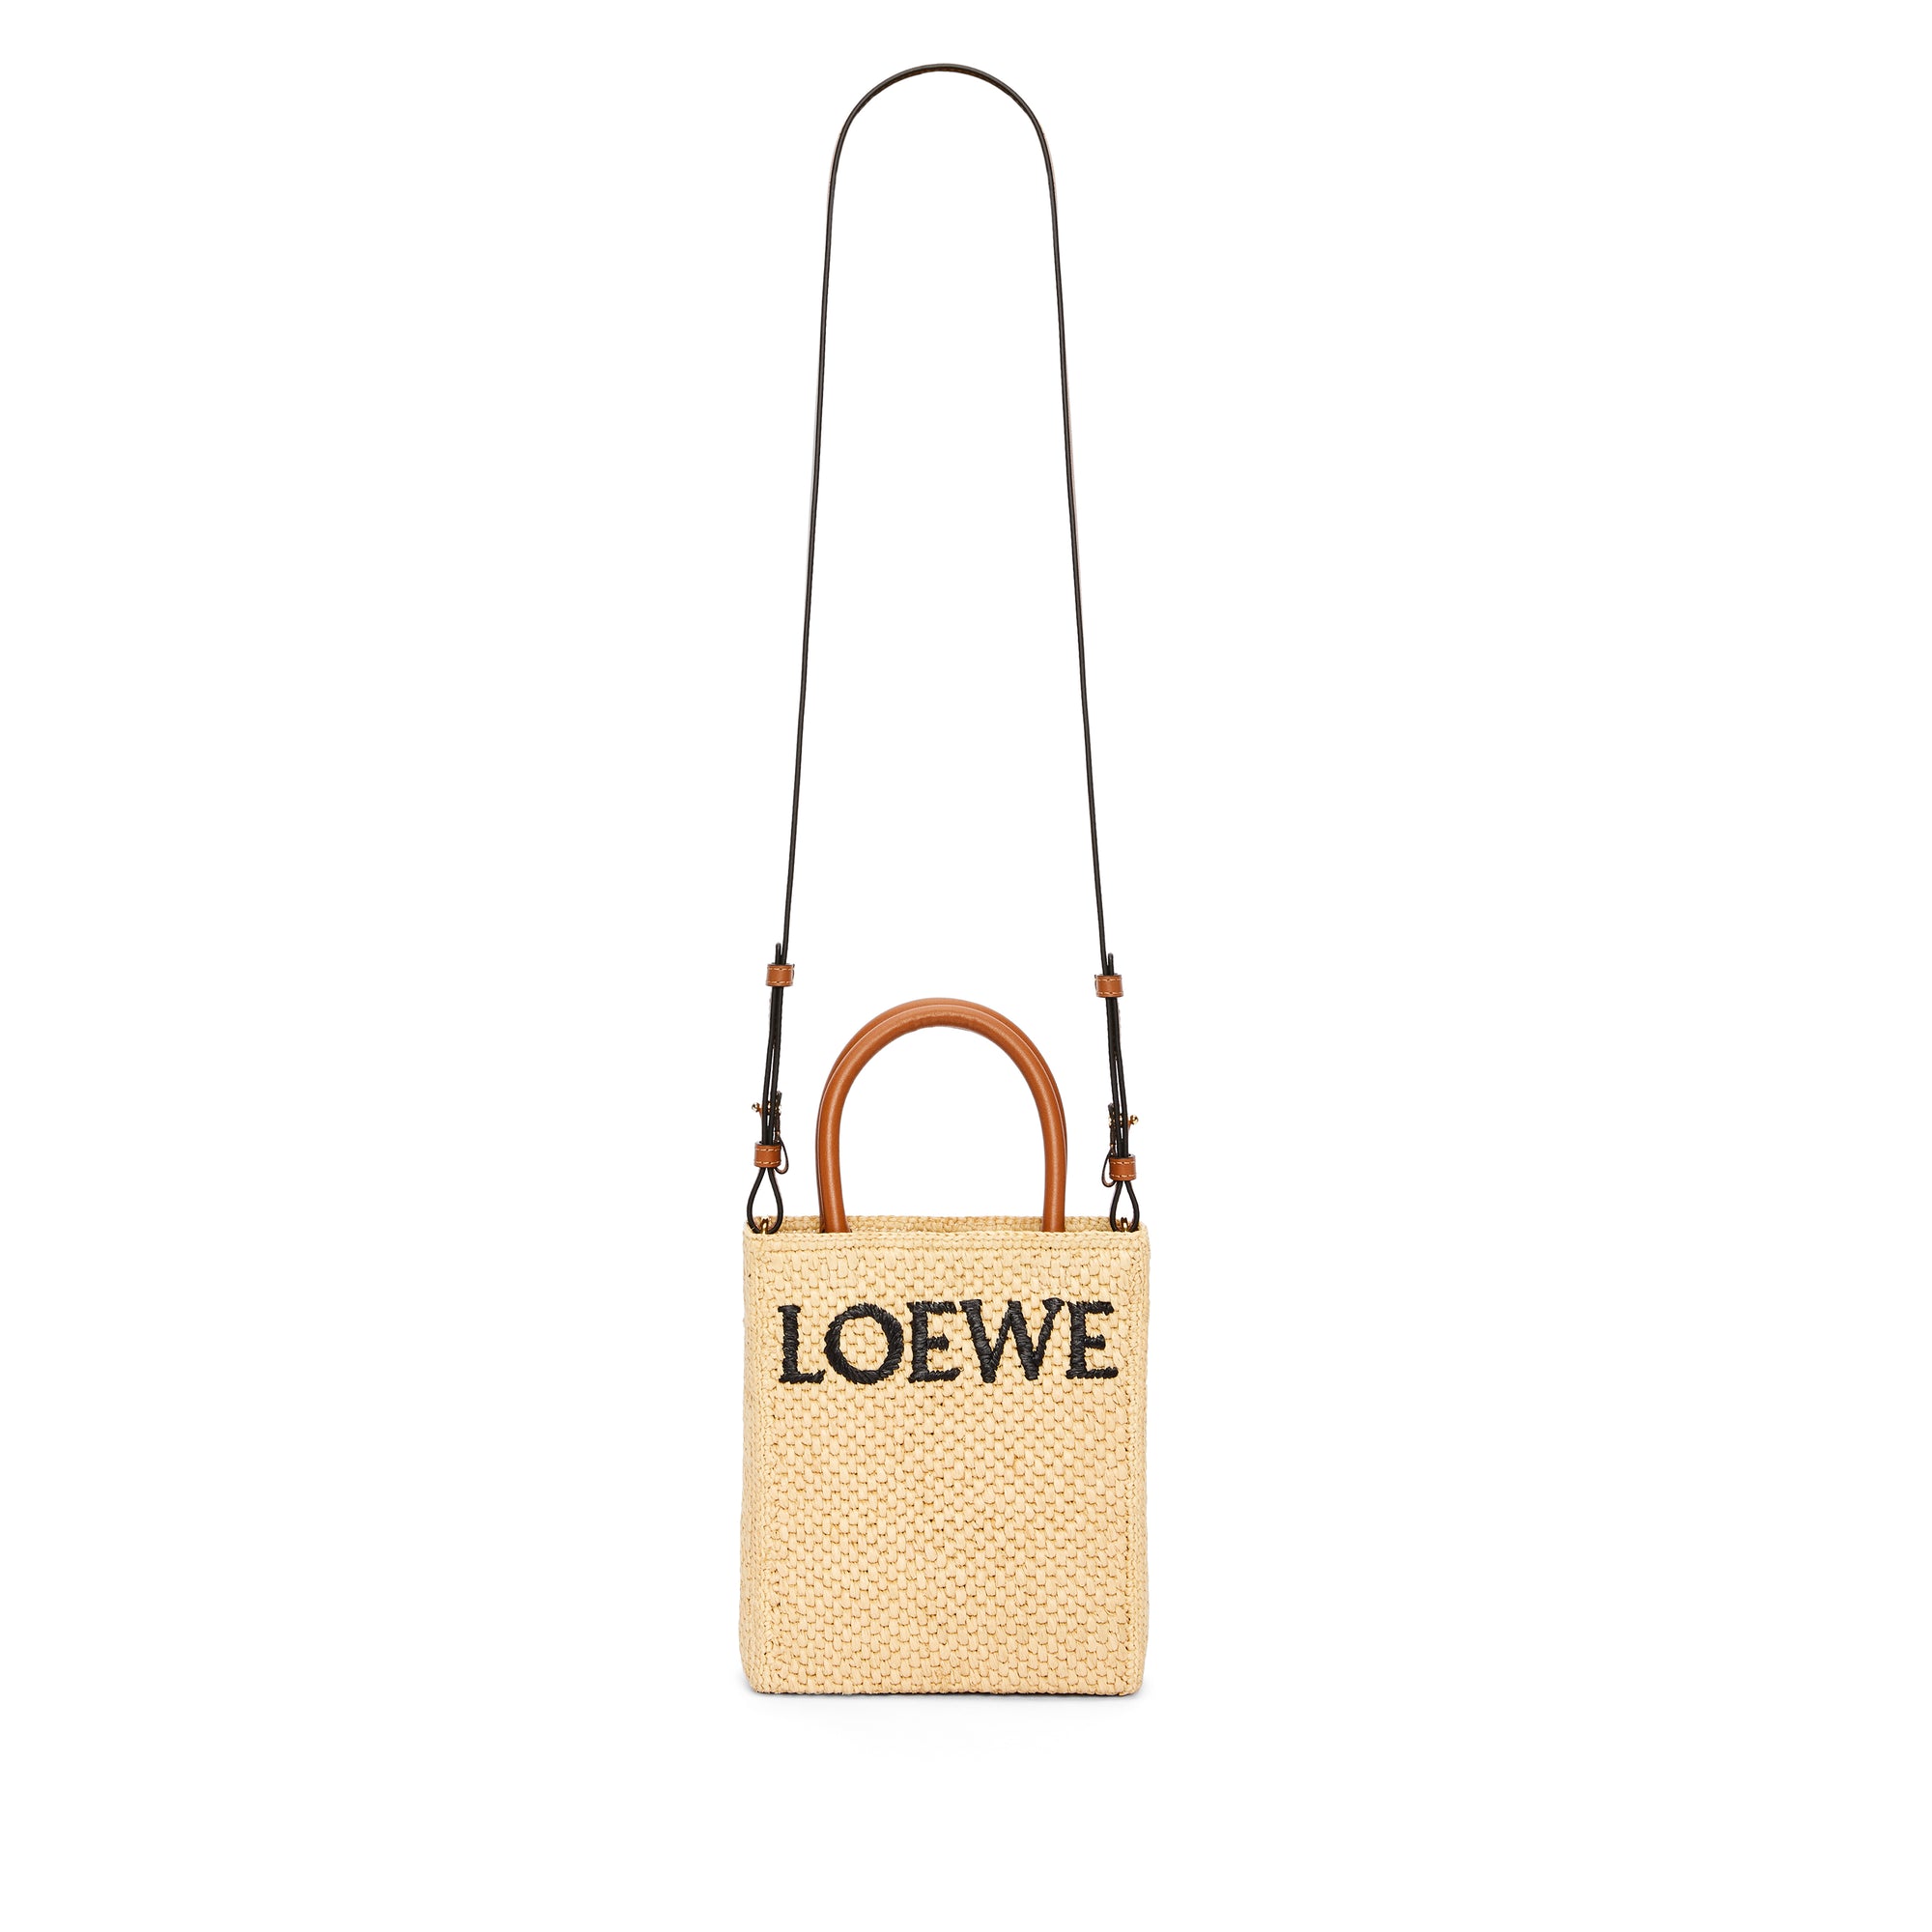 Loewe - Women’s Standard Mini Tote Bag - (Natural/Black) view 2